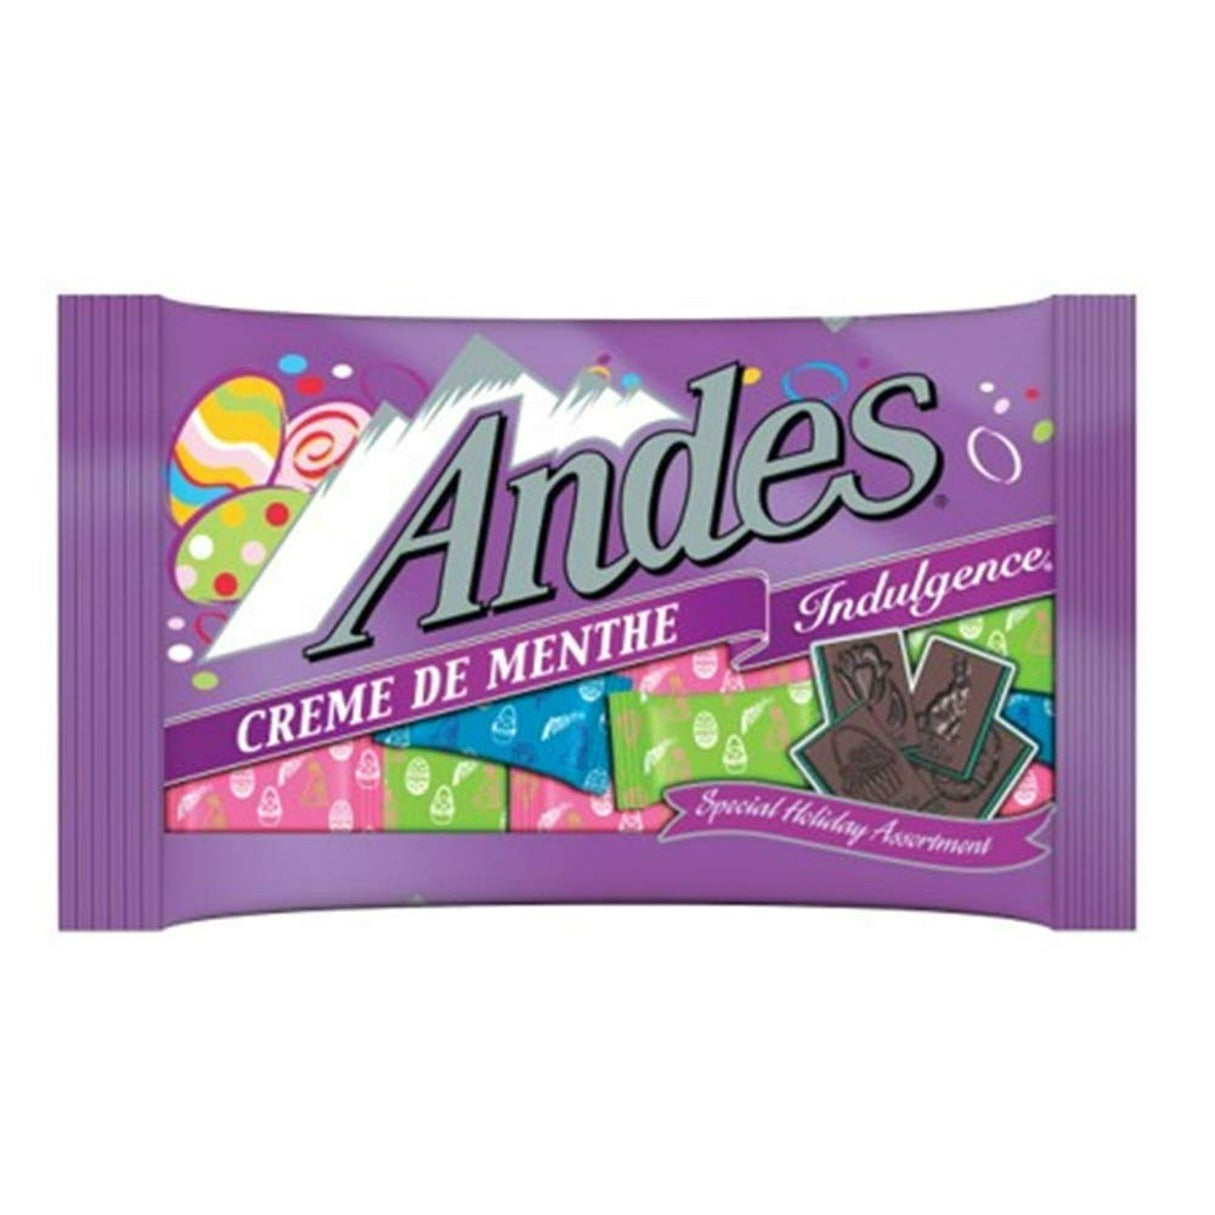 Andes Mints Easter bag 9.5oz - 12ct